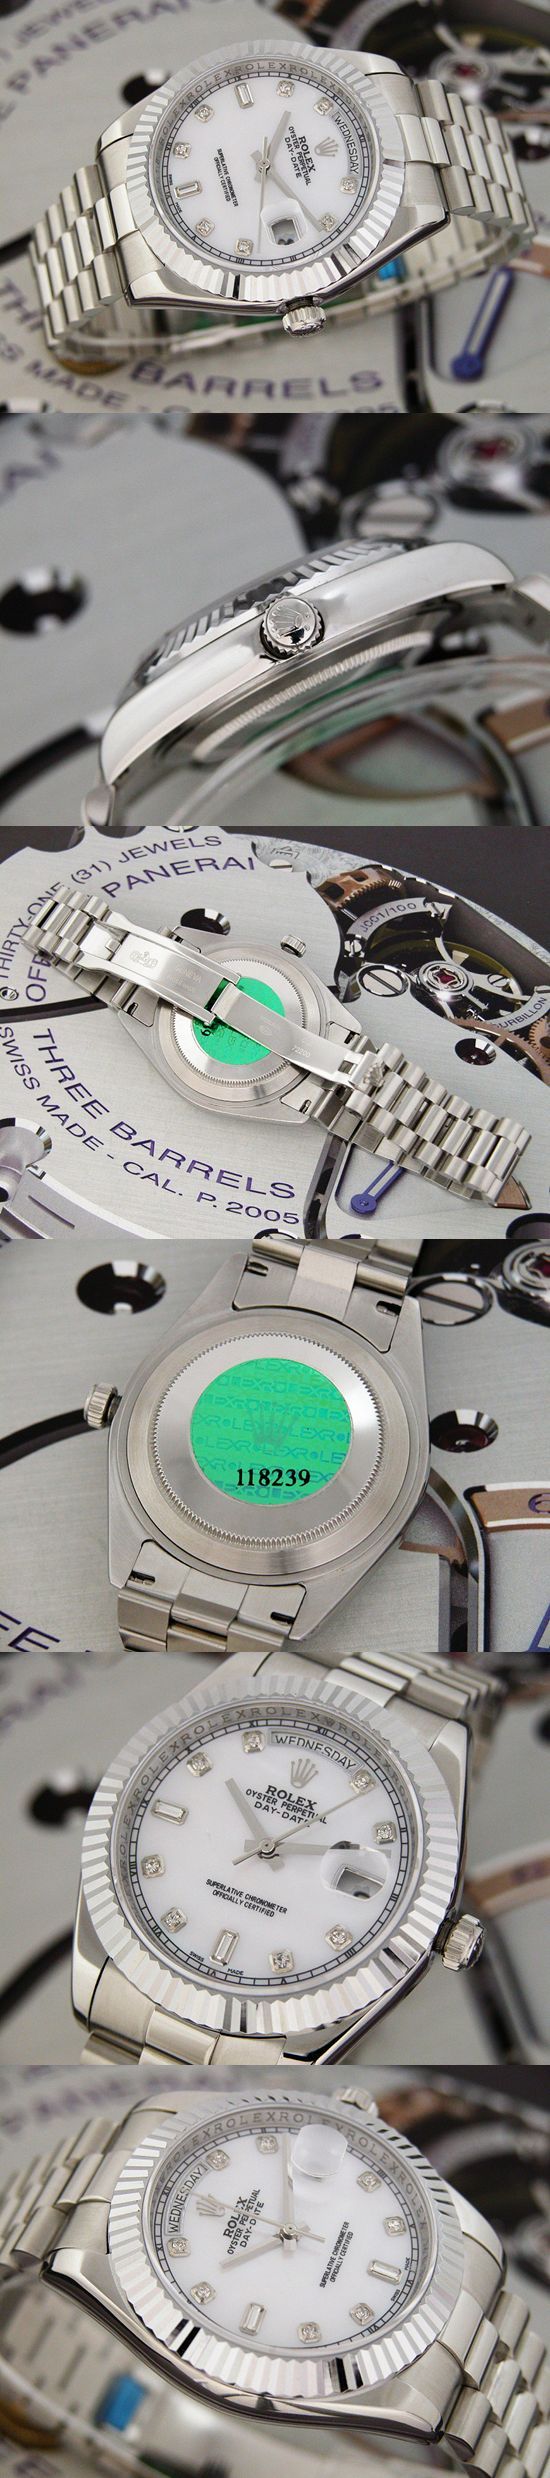 おしゃれなブランド時計がロレックス-デイデイト-ROLEX-118239-117-男性用を提供します.